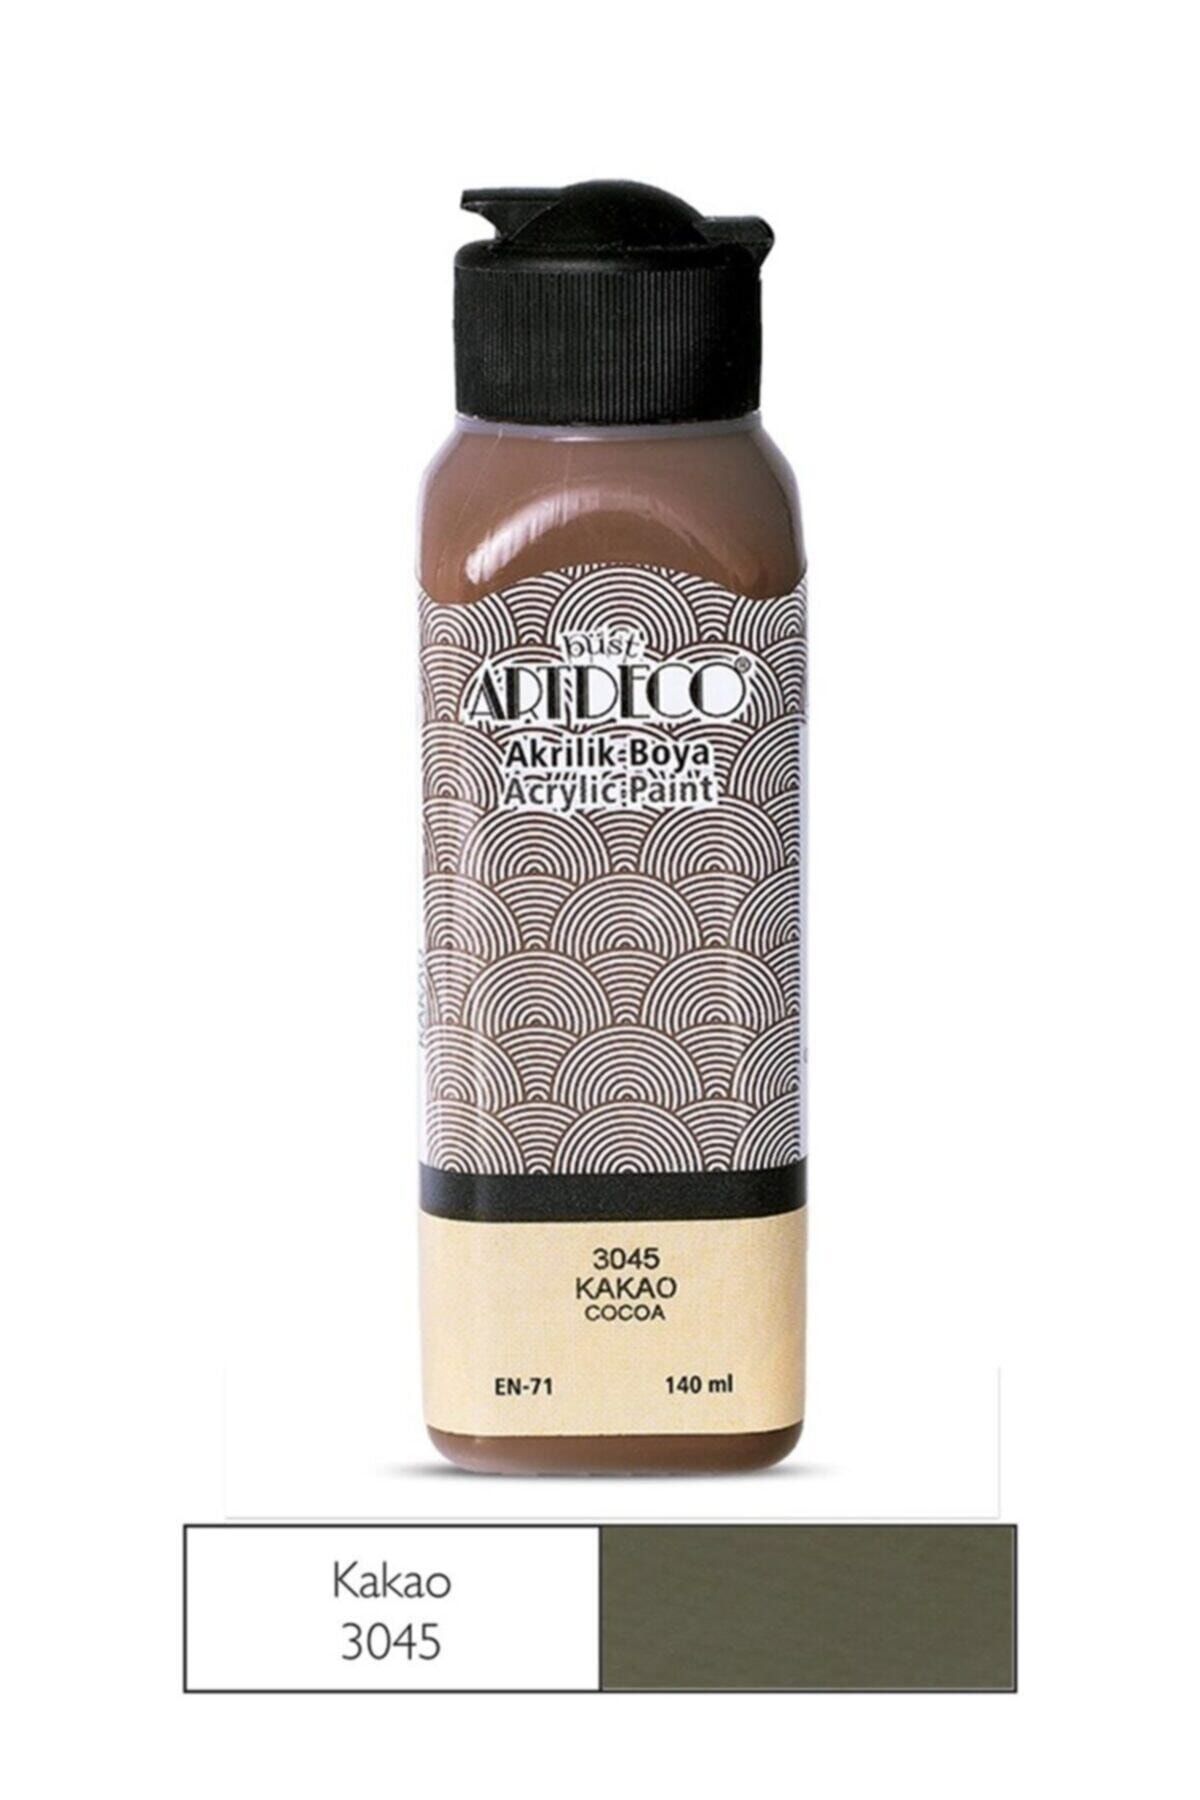 Artdeco Akrilik Boya 140 Ml 3045 Kakao